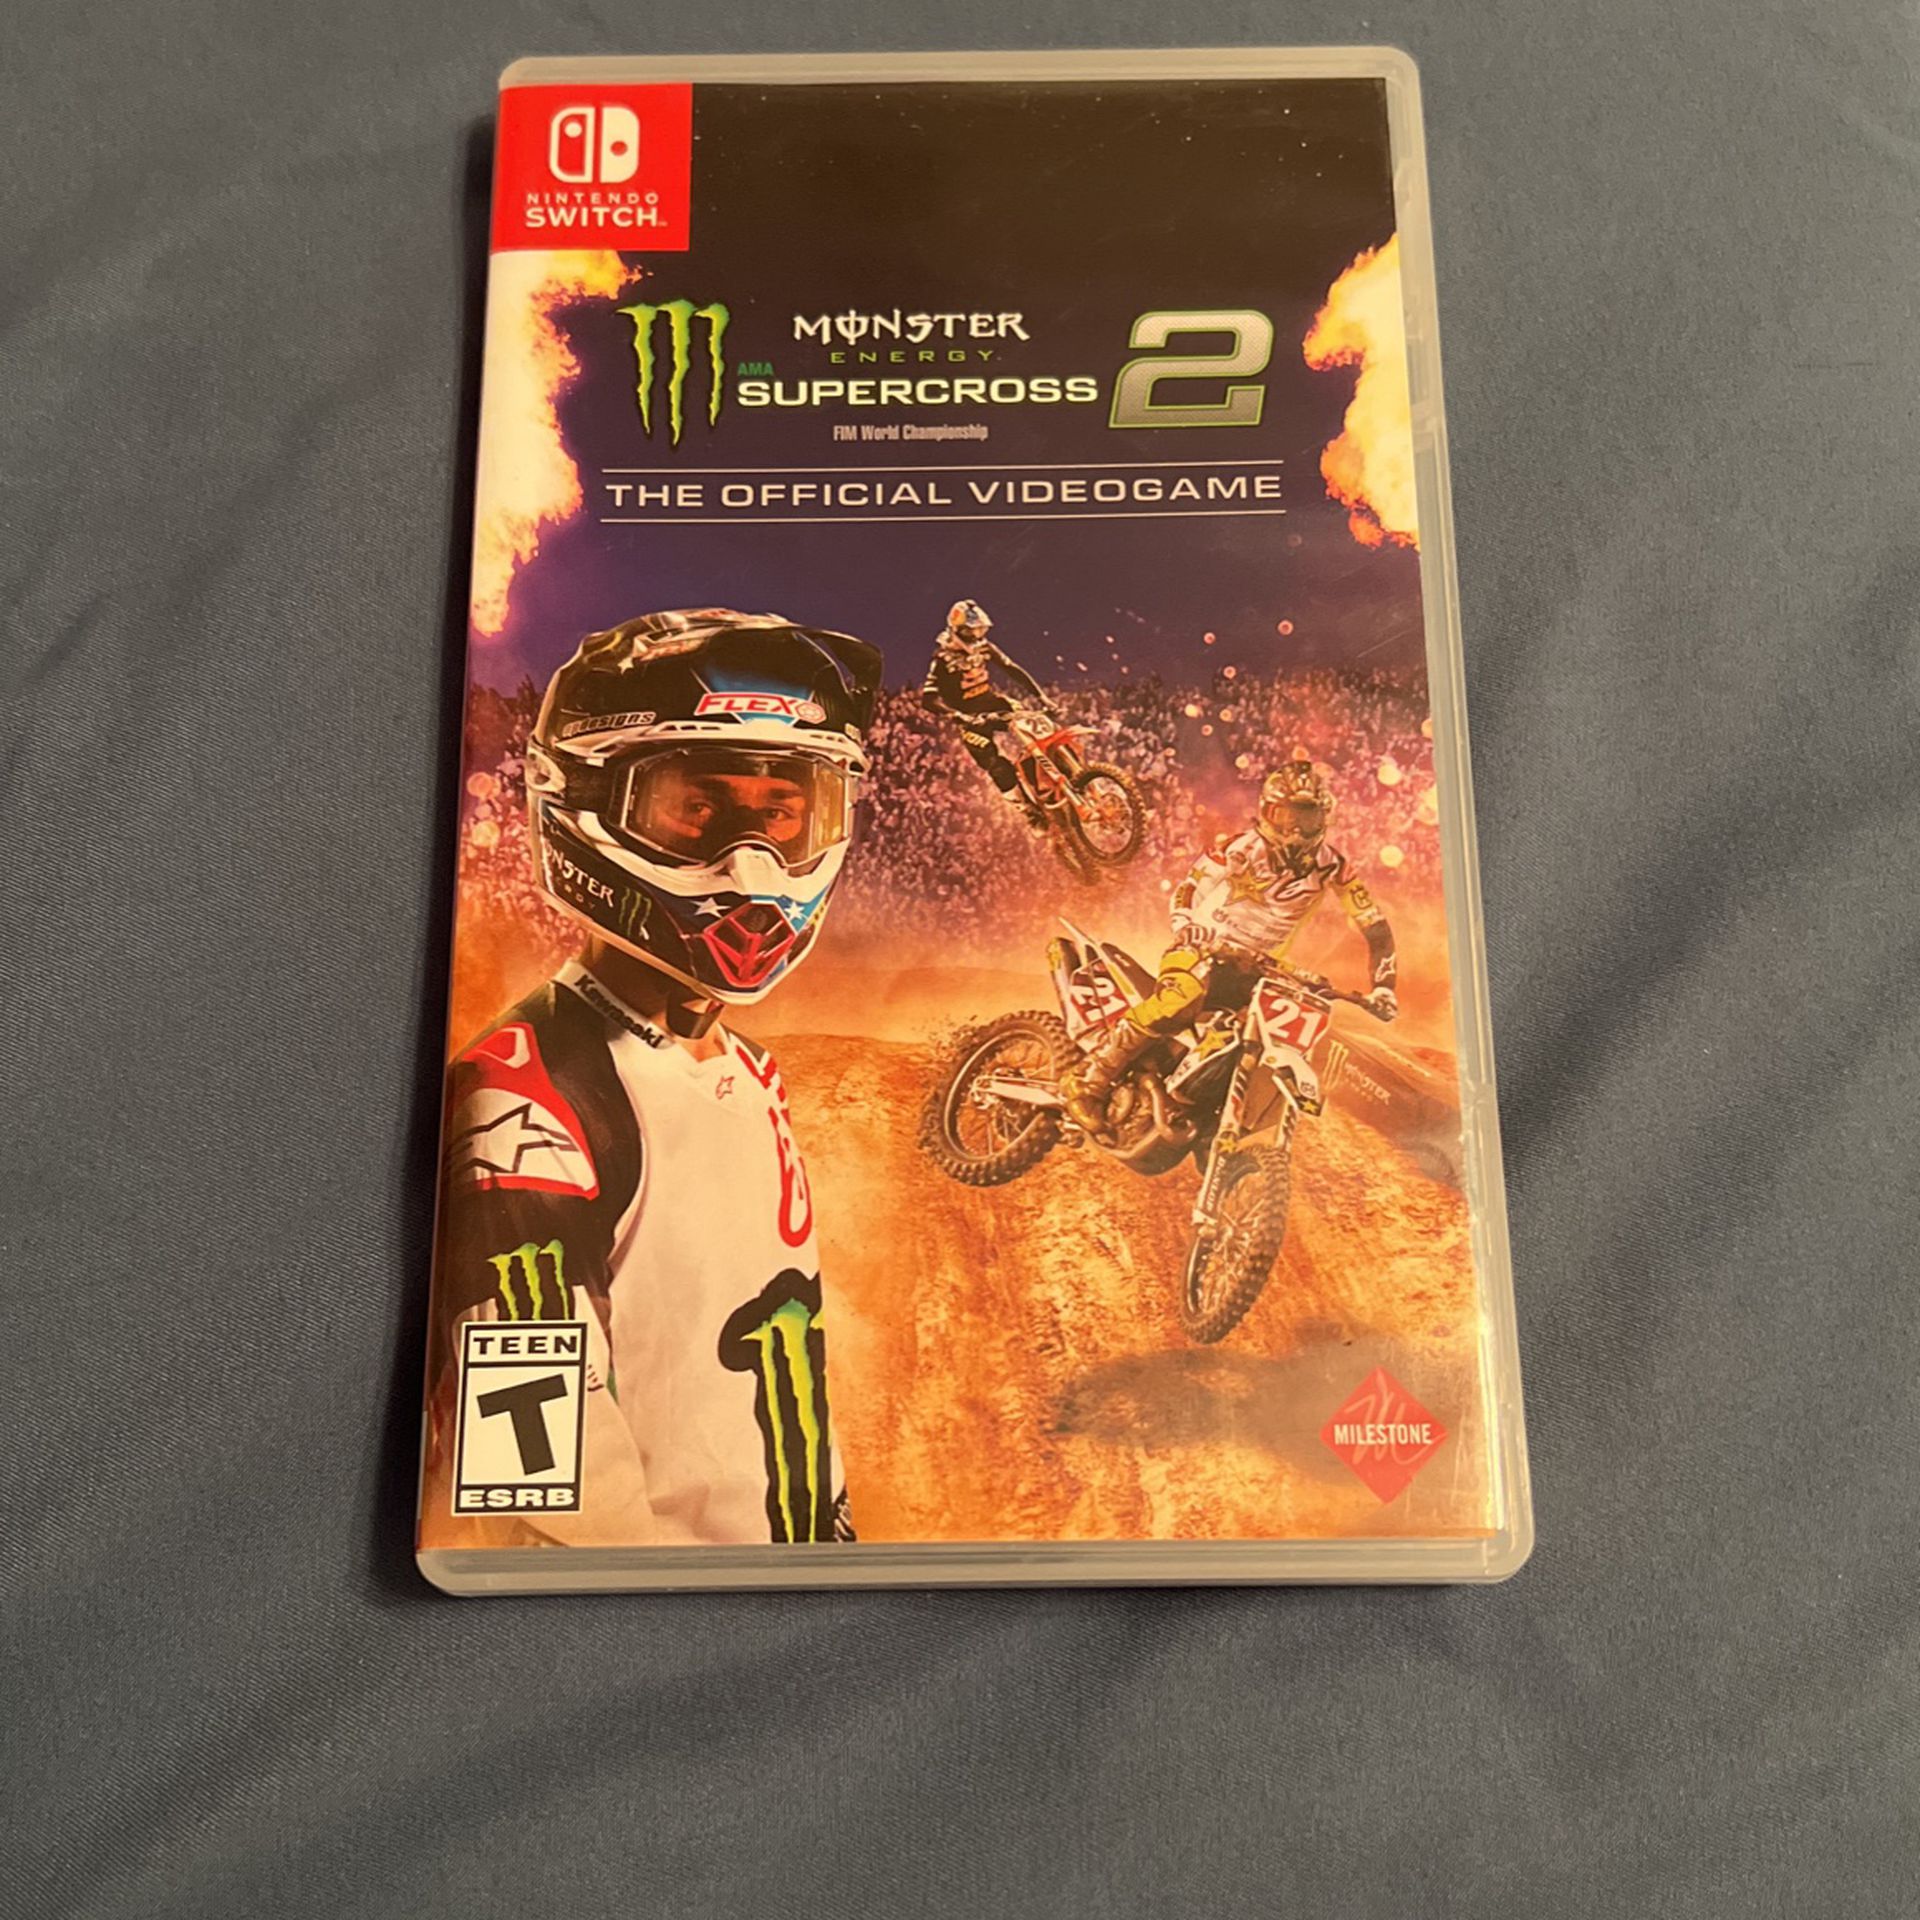 Monster energy Supercross 2 Nintendo switch game